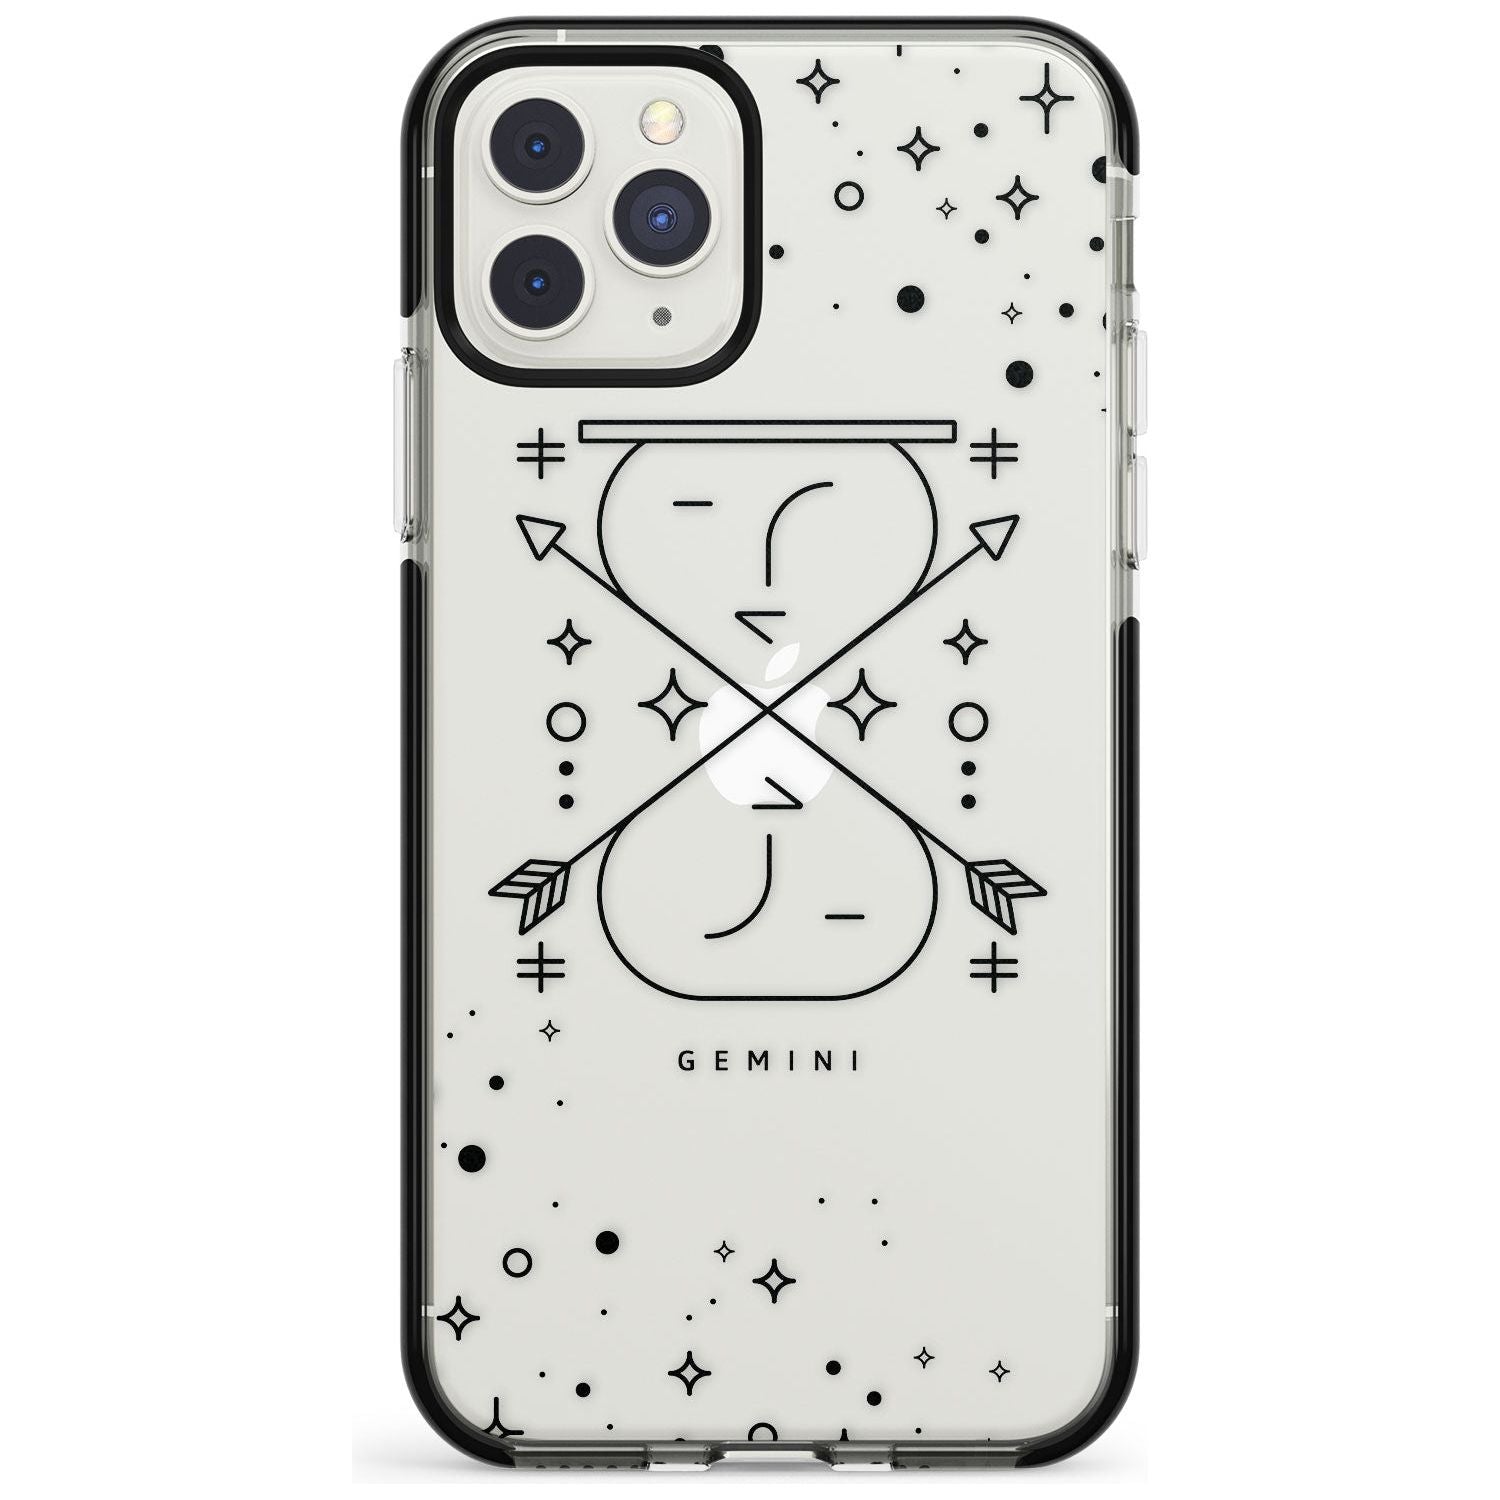 Gemini Emblem - Transparent Design Black Impact Phone Case for iPhone 11 Pro Max